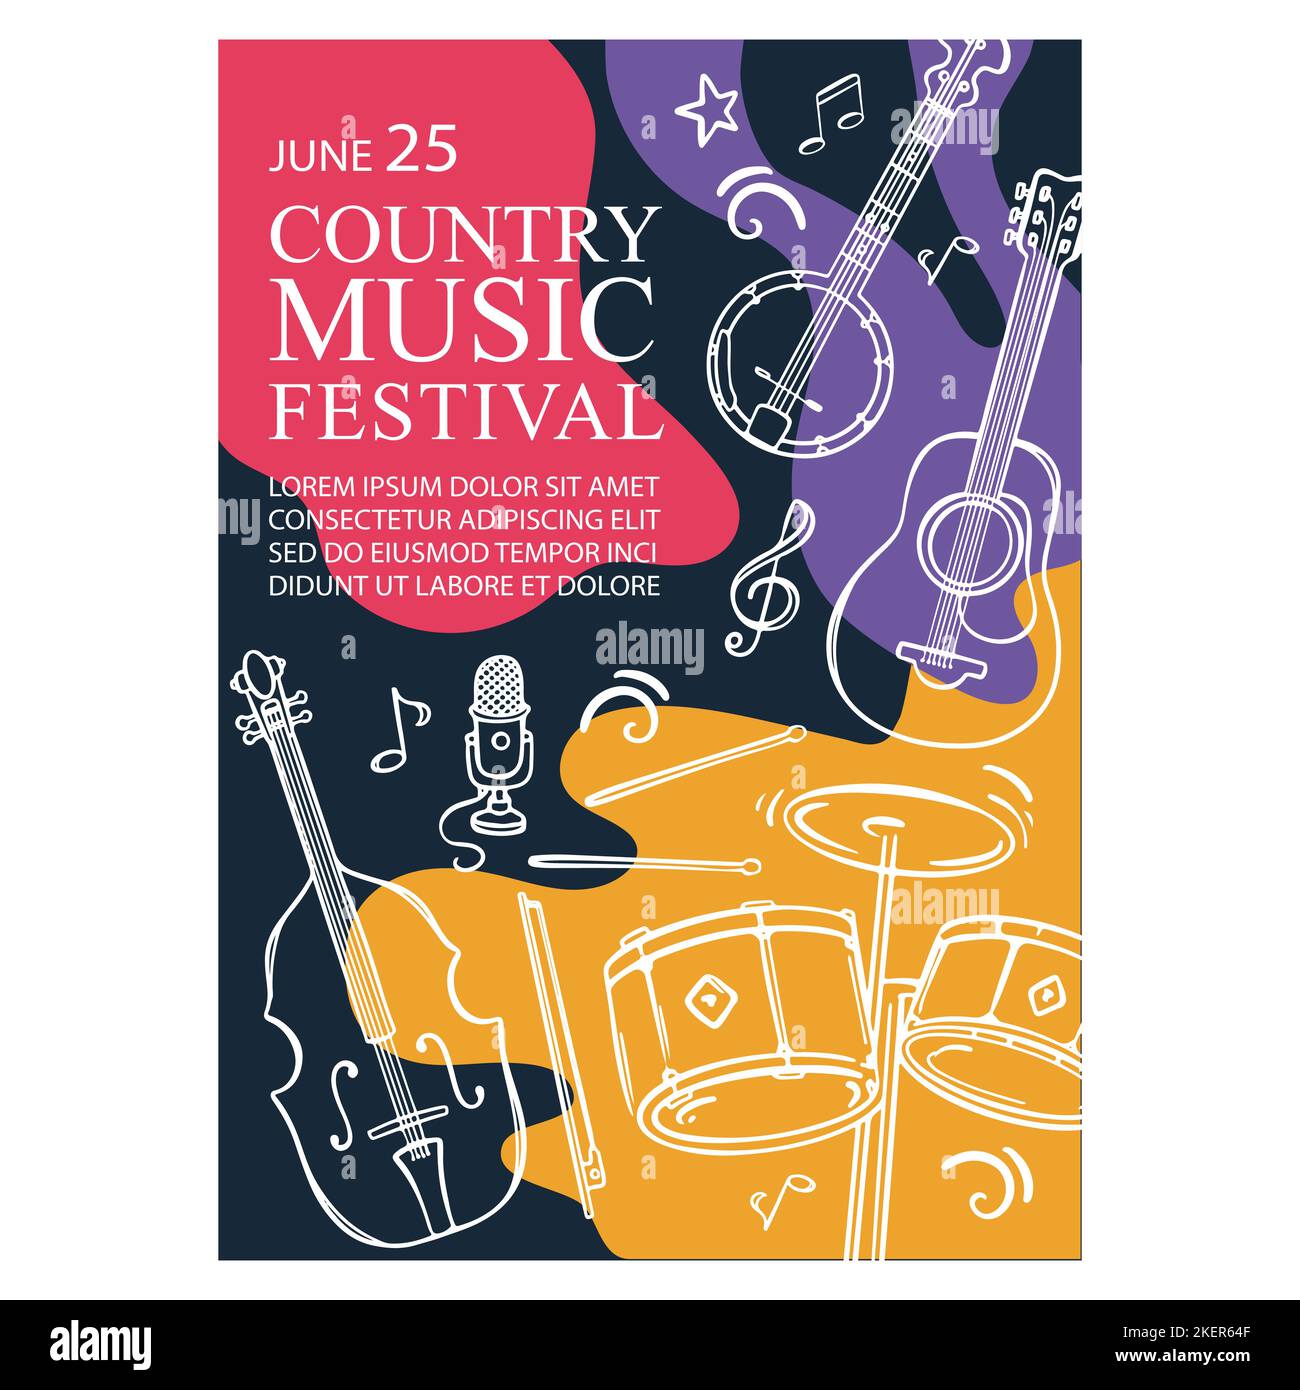 COUNTRY MUSIC FEST Banner Vertical Poster de Concierto con Cello Guitar Banjo y Tambores Invitación Texto sobre Abstract Colorful Background Hand Drawn Vector Ilustración del Vector